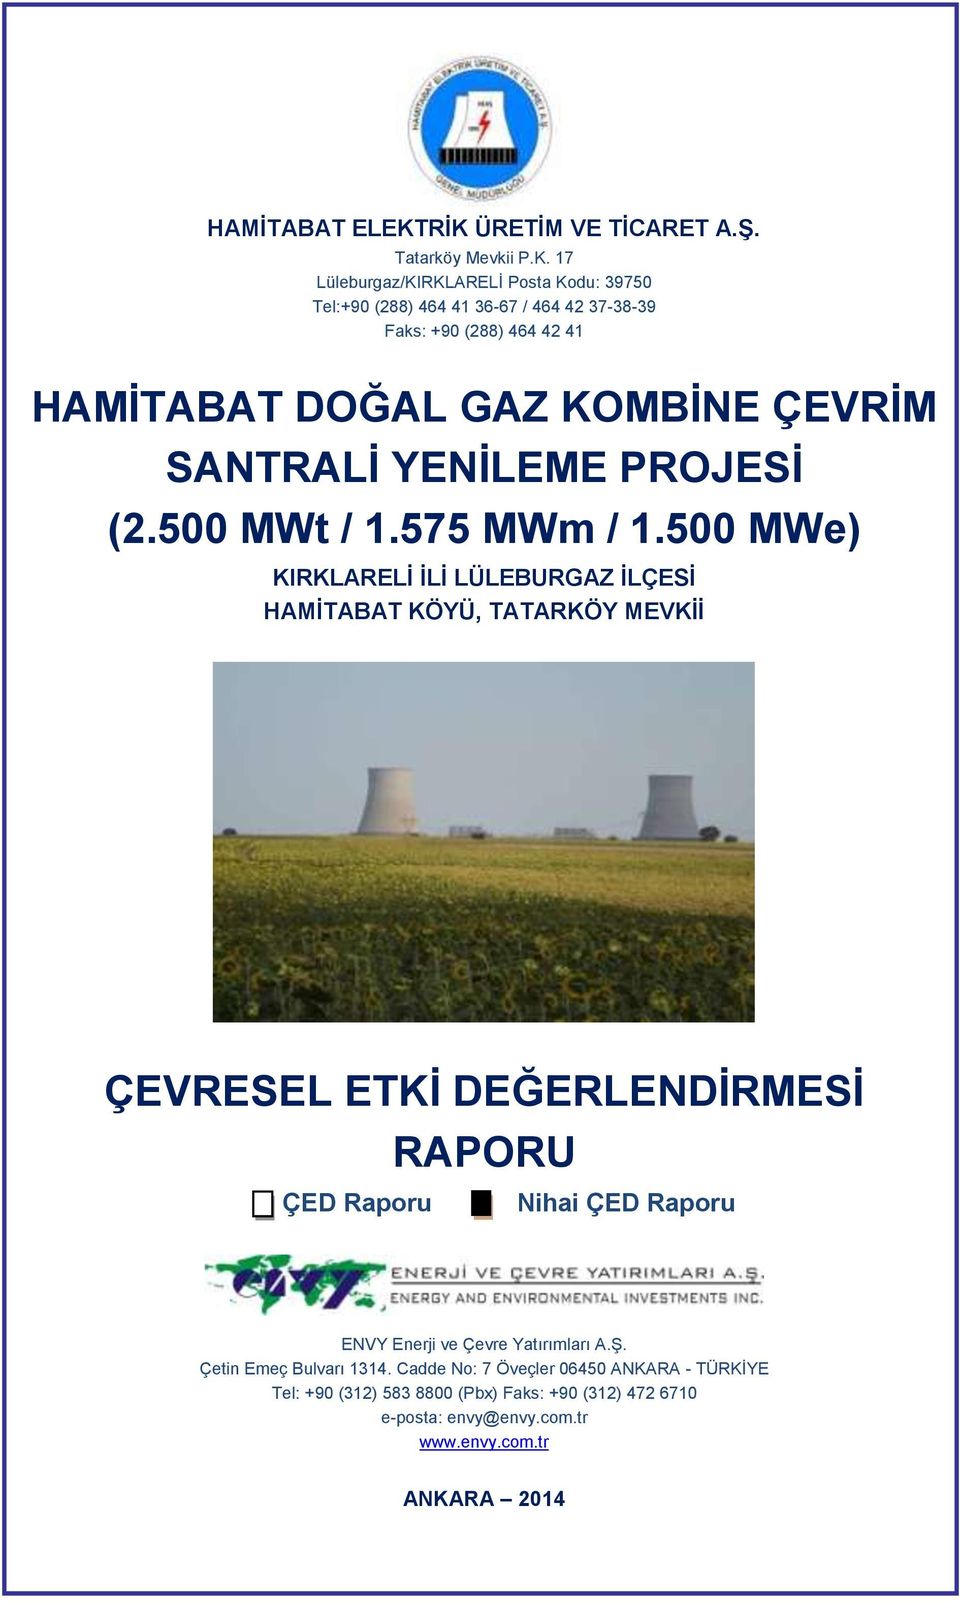 464 42 41 HAMİTABAT DOĞAL GAZ KOMBİNE ÇEVRİM SANTRALİ YENİLEME PROJESİ (2.500 MWt / 1.575 MWm / 1.